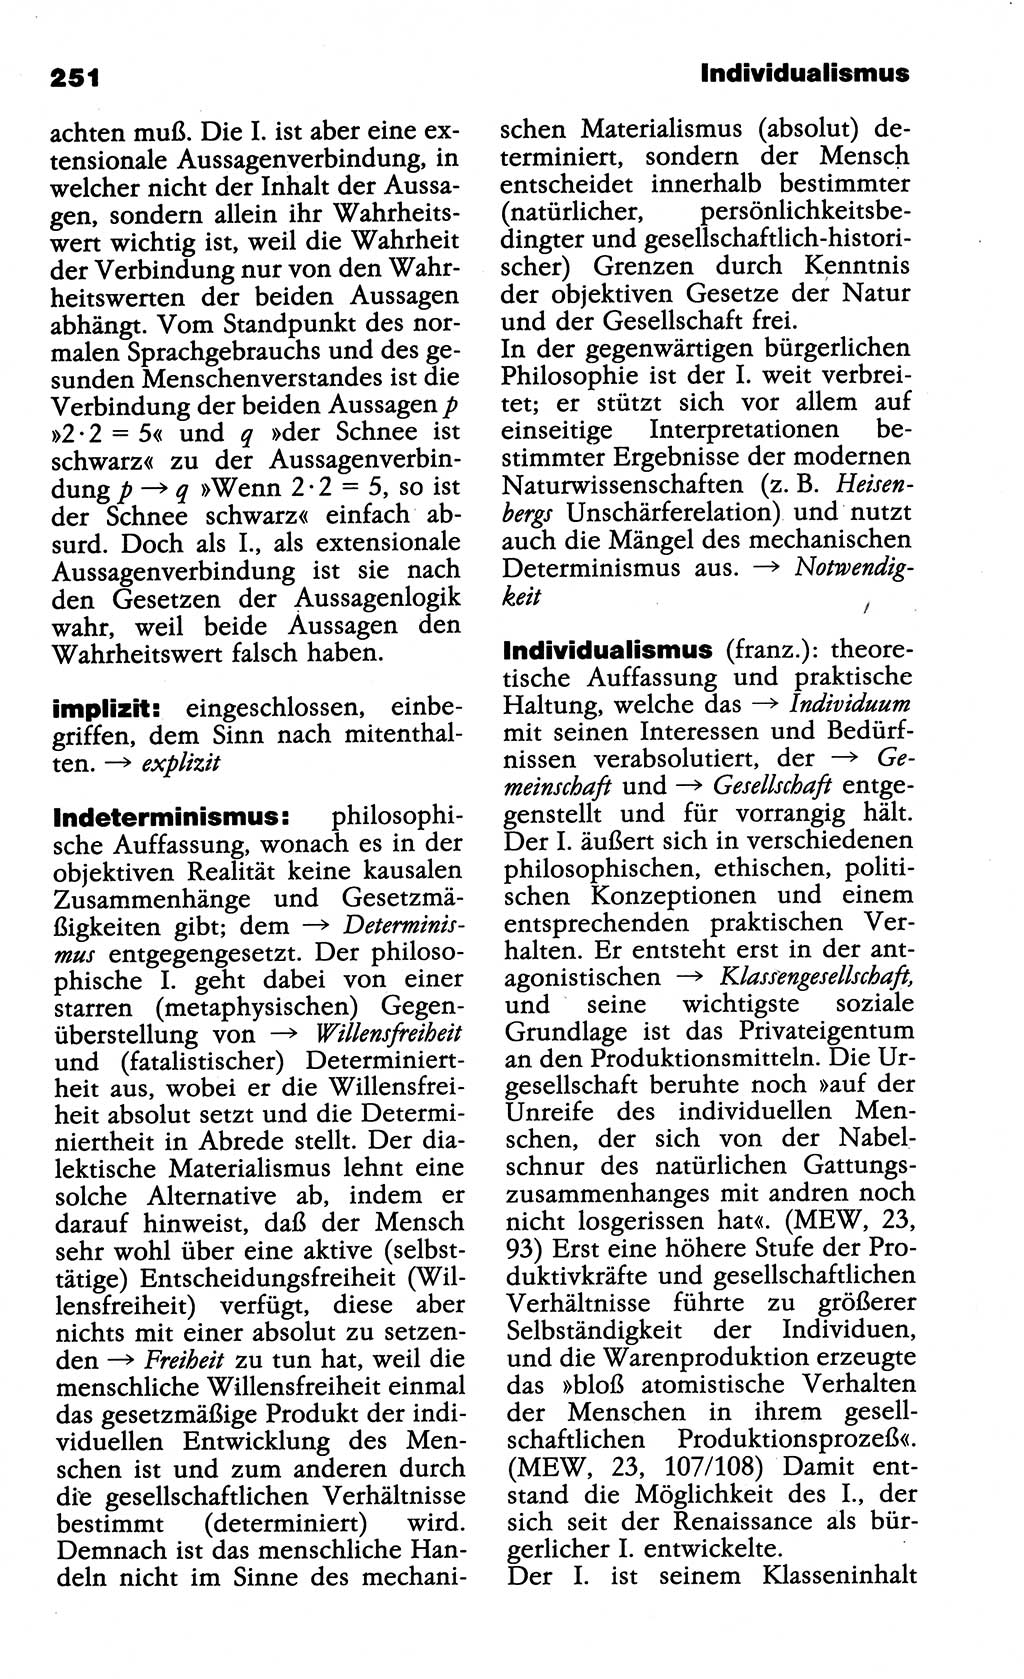 Wörterbuch der marxistisch-leninistischen Philosophie [Deutsche Demokratische Republik (DDR)] 1985, Seite 251 (Wb. ML Phil. DDR 1985, S. 251)